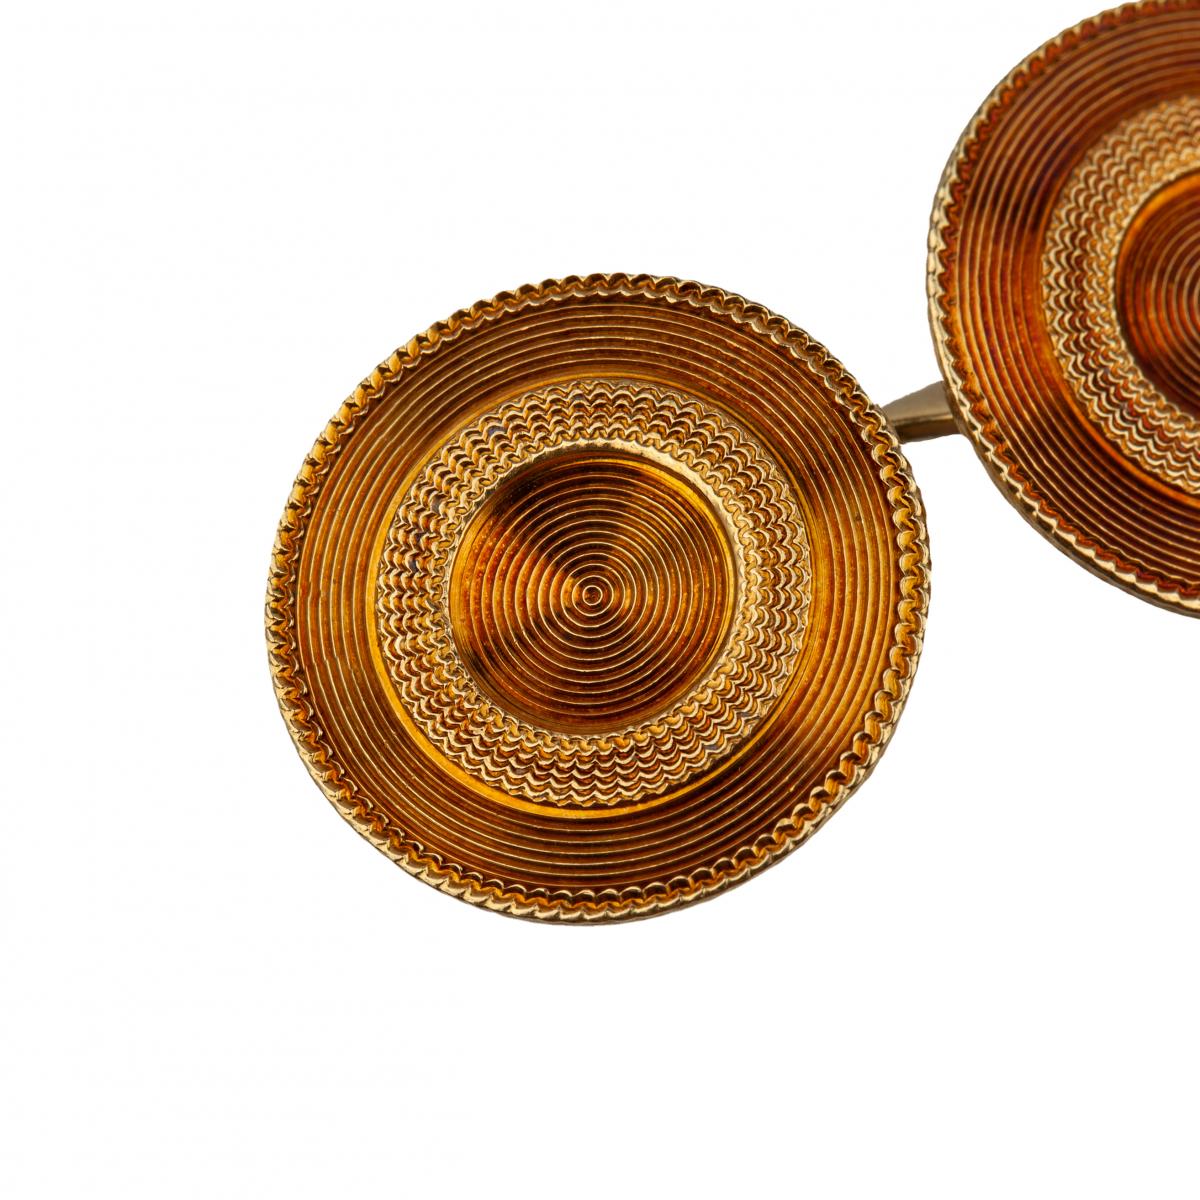 Antique Cufflinks in 18 Karat Rose Gold of Engine Turned Circular Pattern, *USA circa 1900.